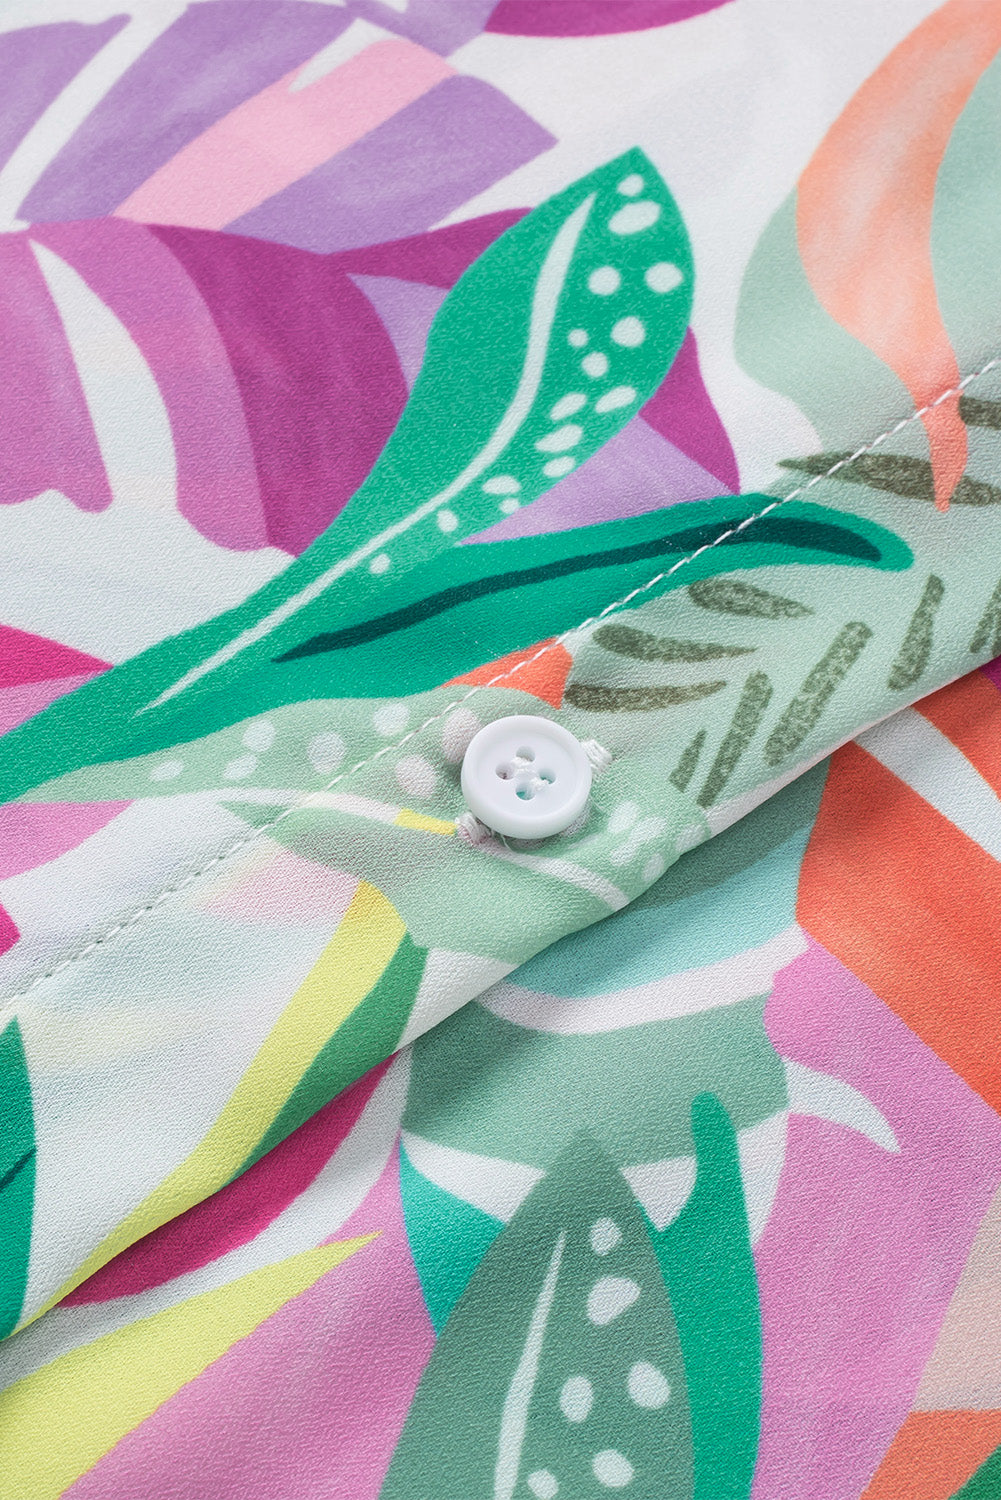 Cache-maillot de plage boutonné à imprimé végétal multicolore à demi-manches